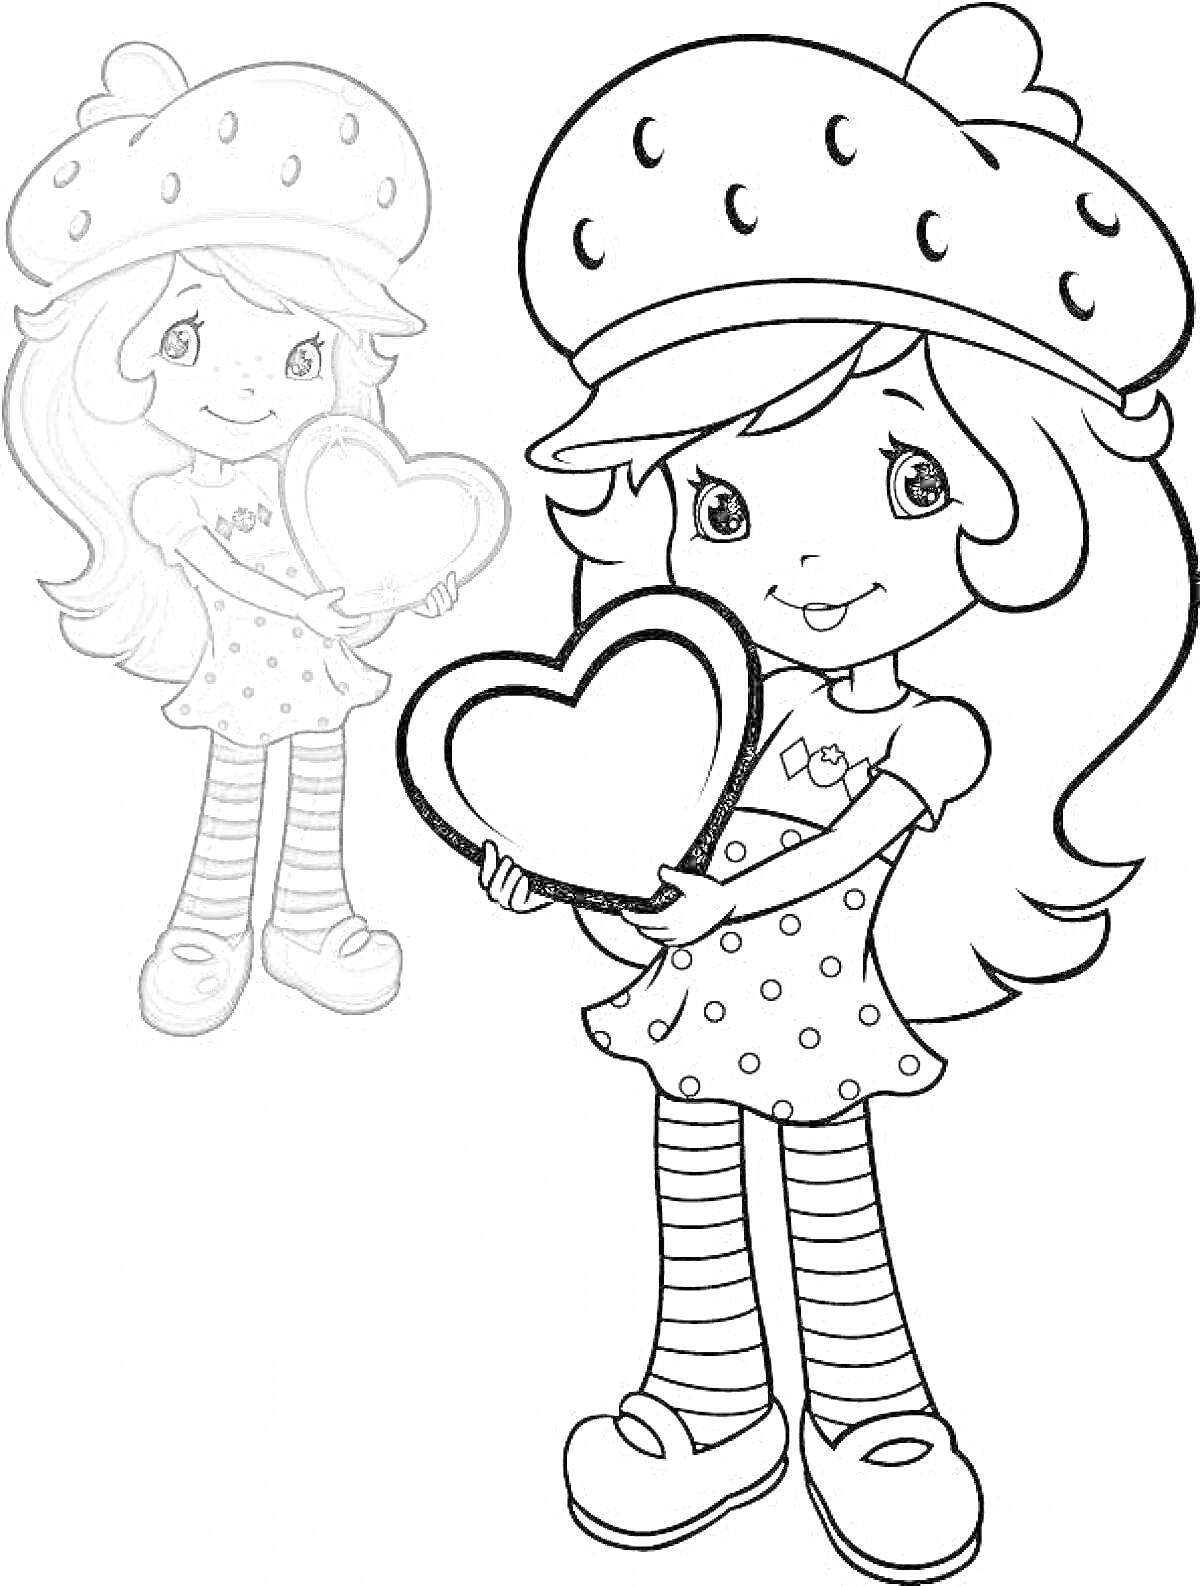 Раскраска Девочка с длинными волосами, в шапке с клубничным рисунком, платье в горошек и полосатых чулках, с сердцем в руках.